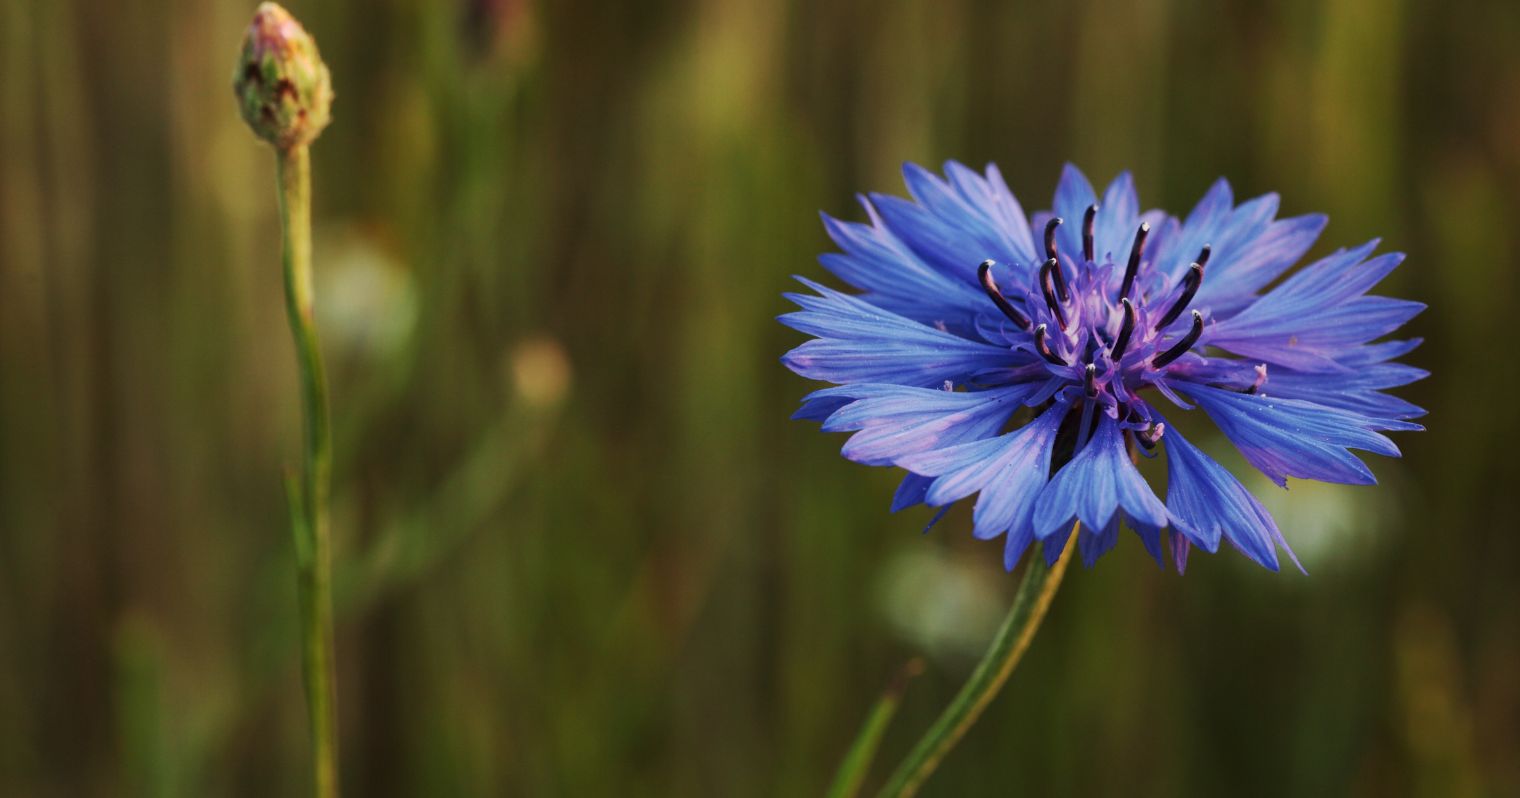 Hosszú lágyszárú nagy kék virág, aminek a szirmainak a vége cakkos.